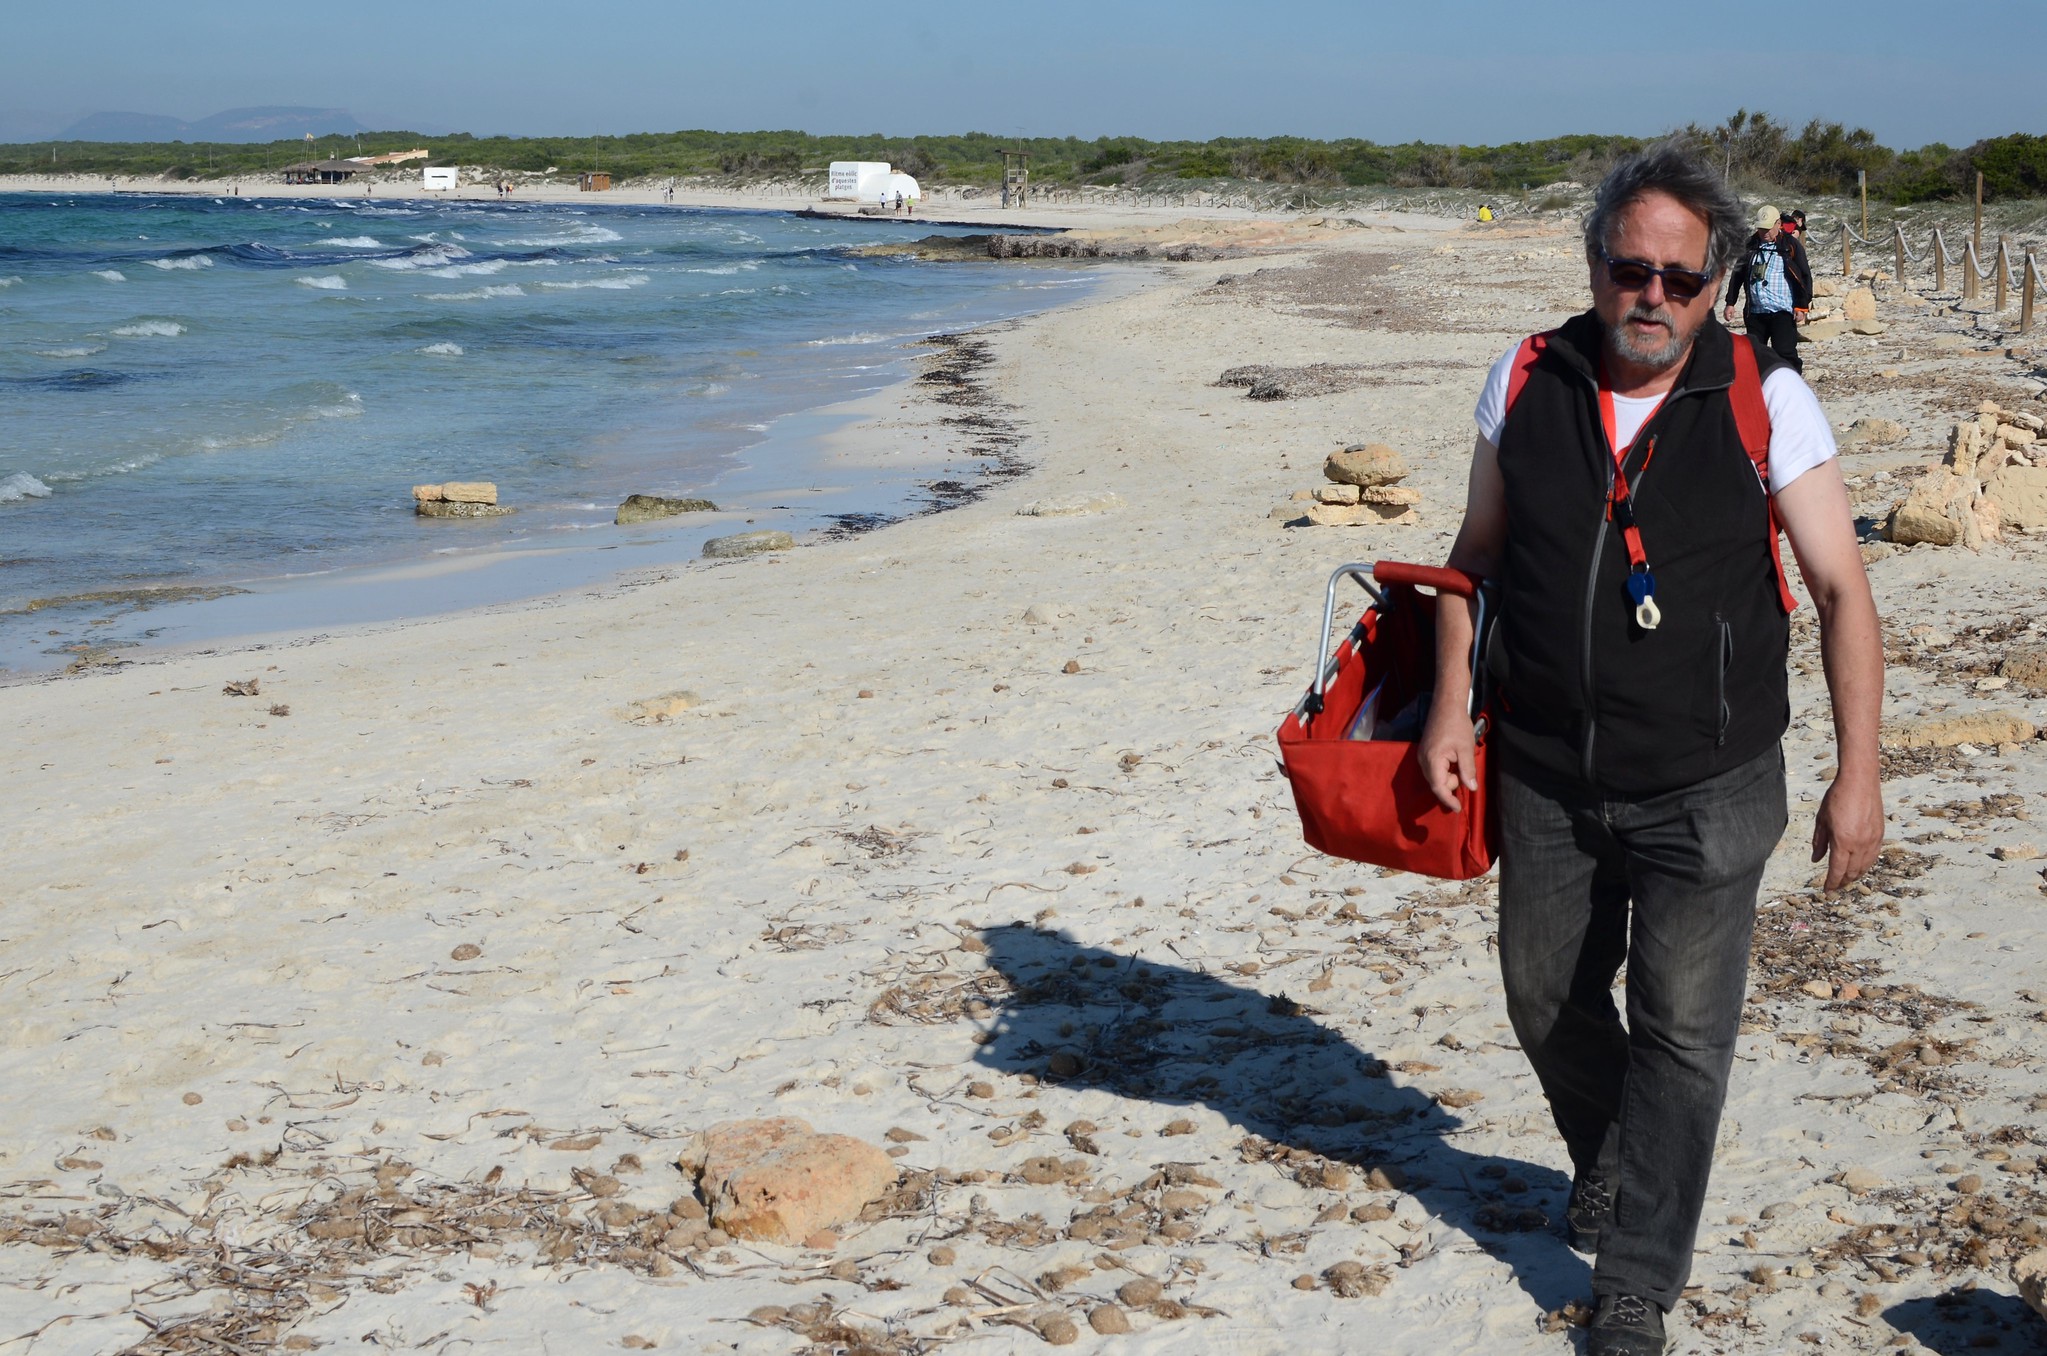 Enric plockar svamp på stranden